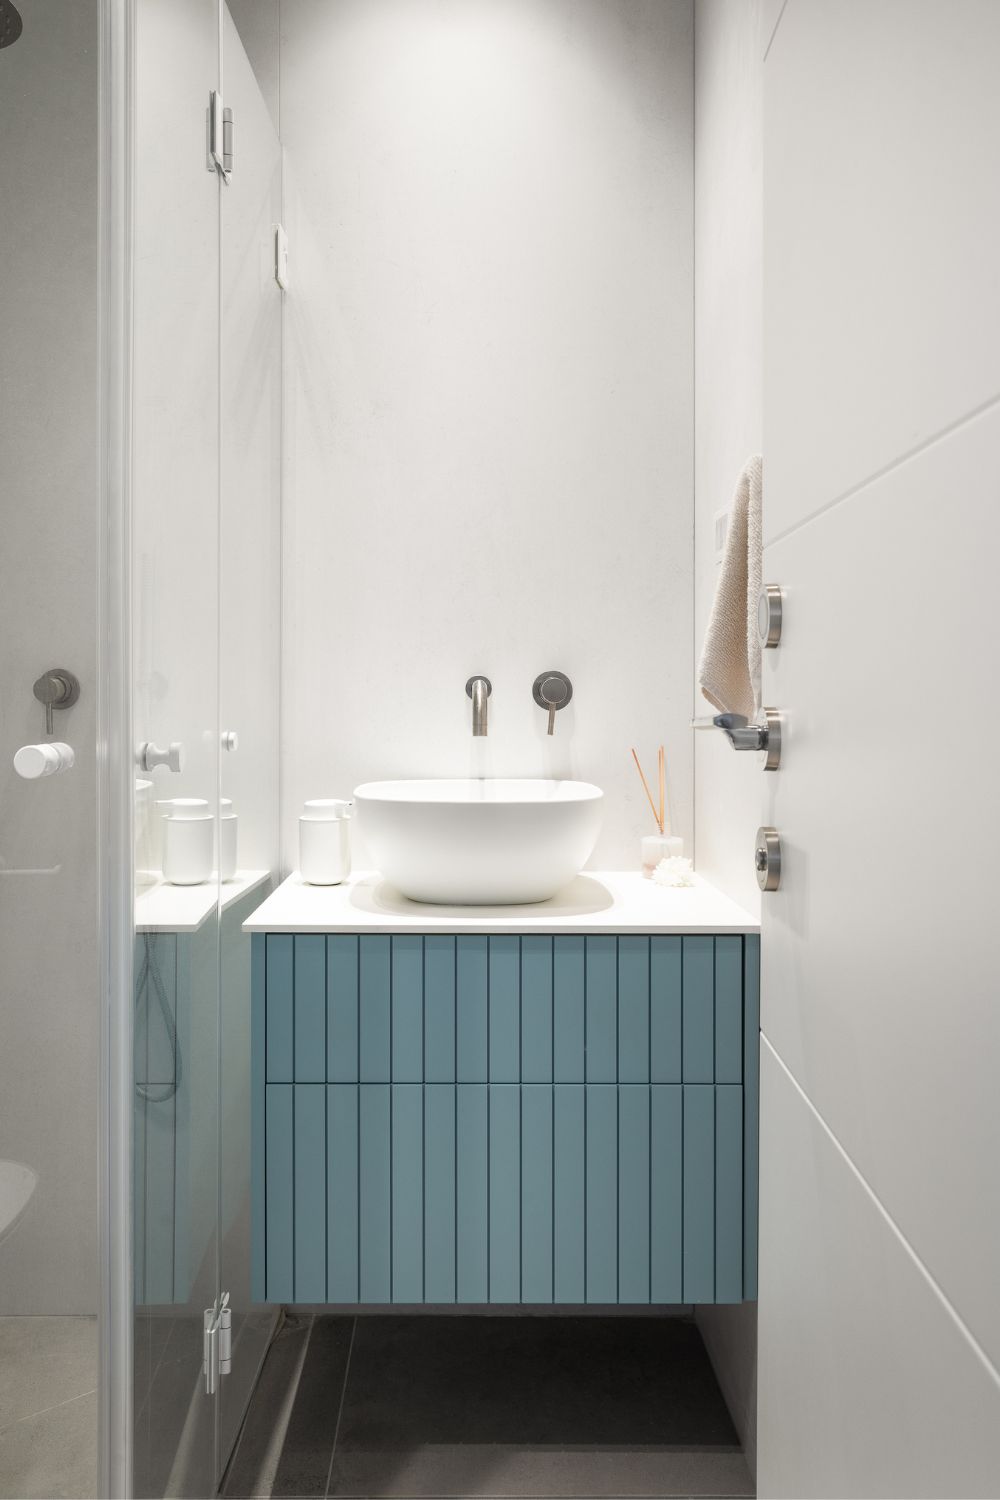 שידה כחולה באמבטיה - מבית משפחת ליחובסקי - איילים נגרות